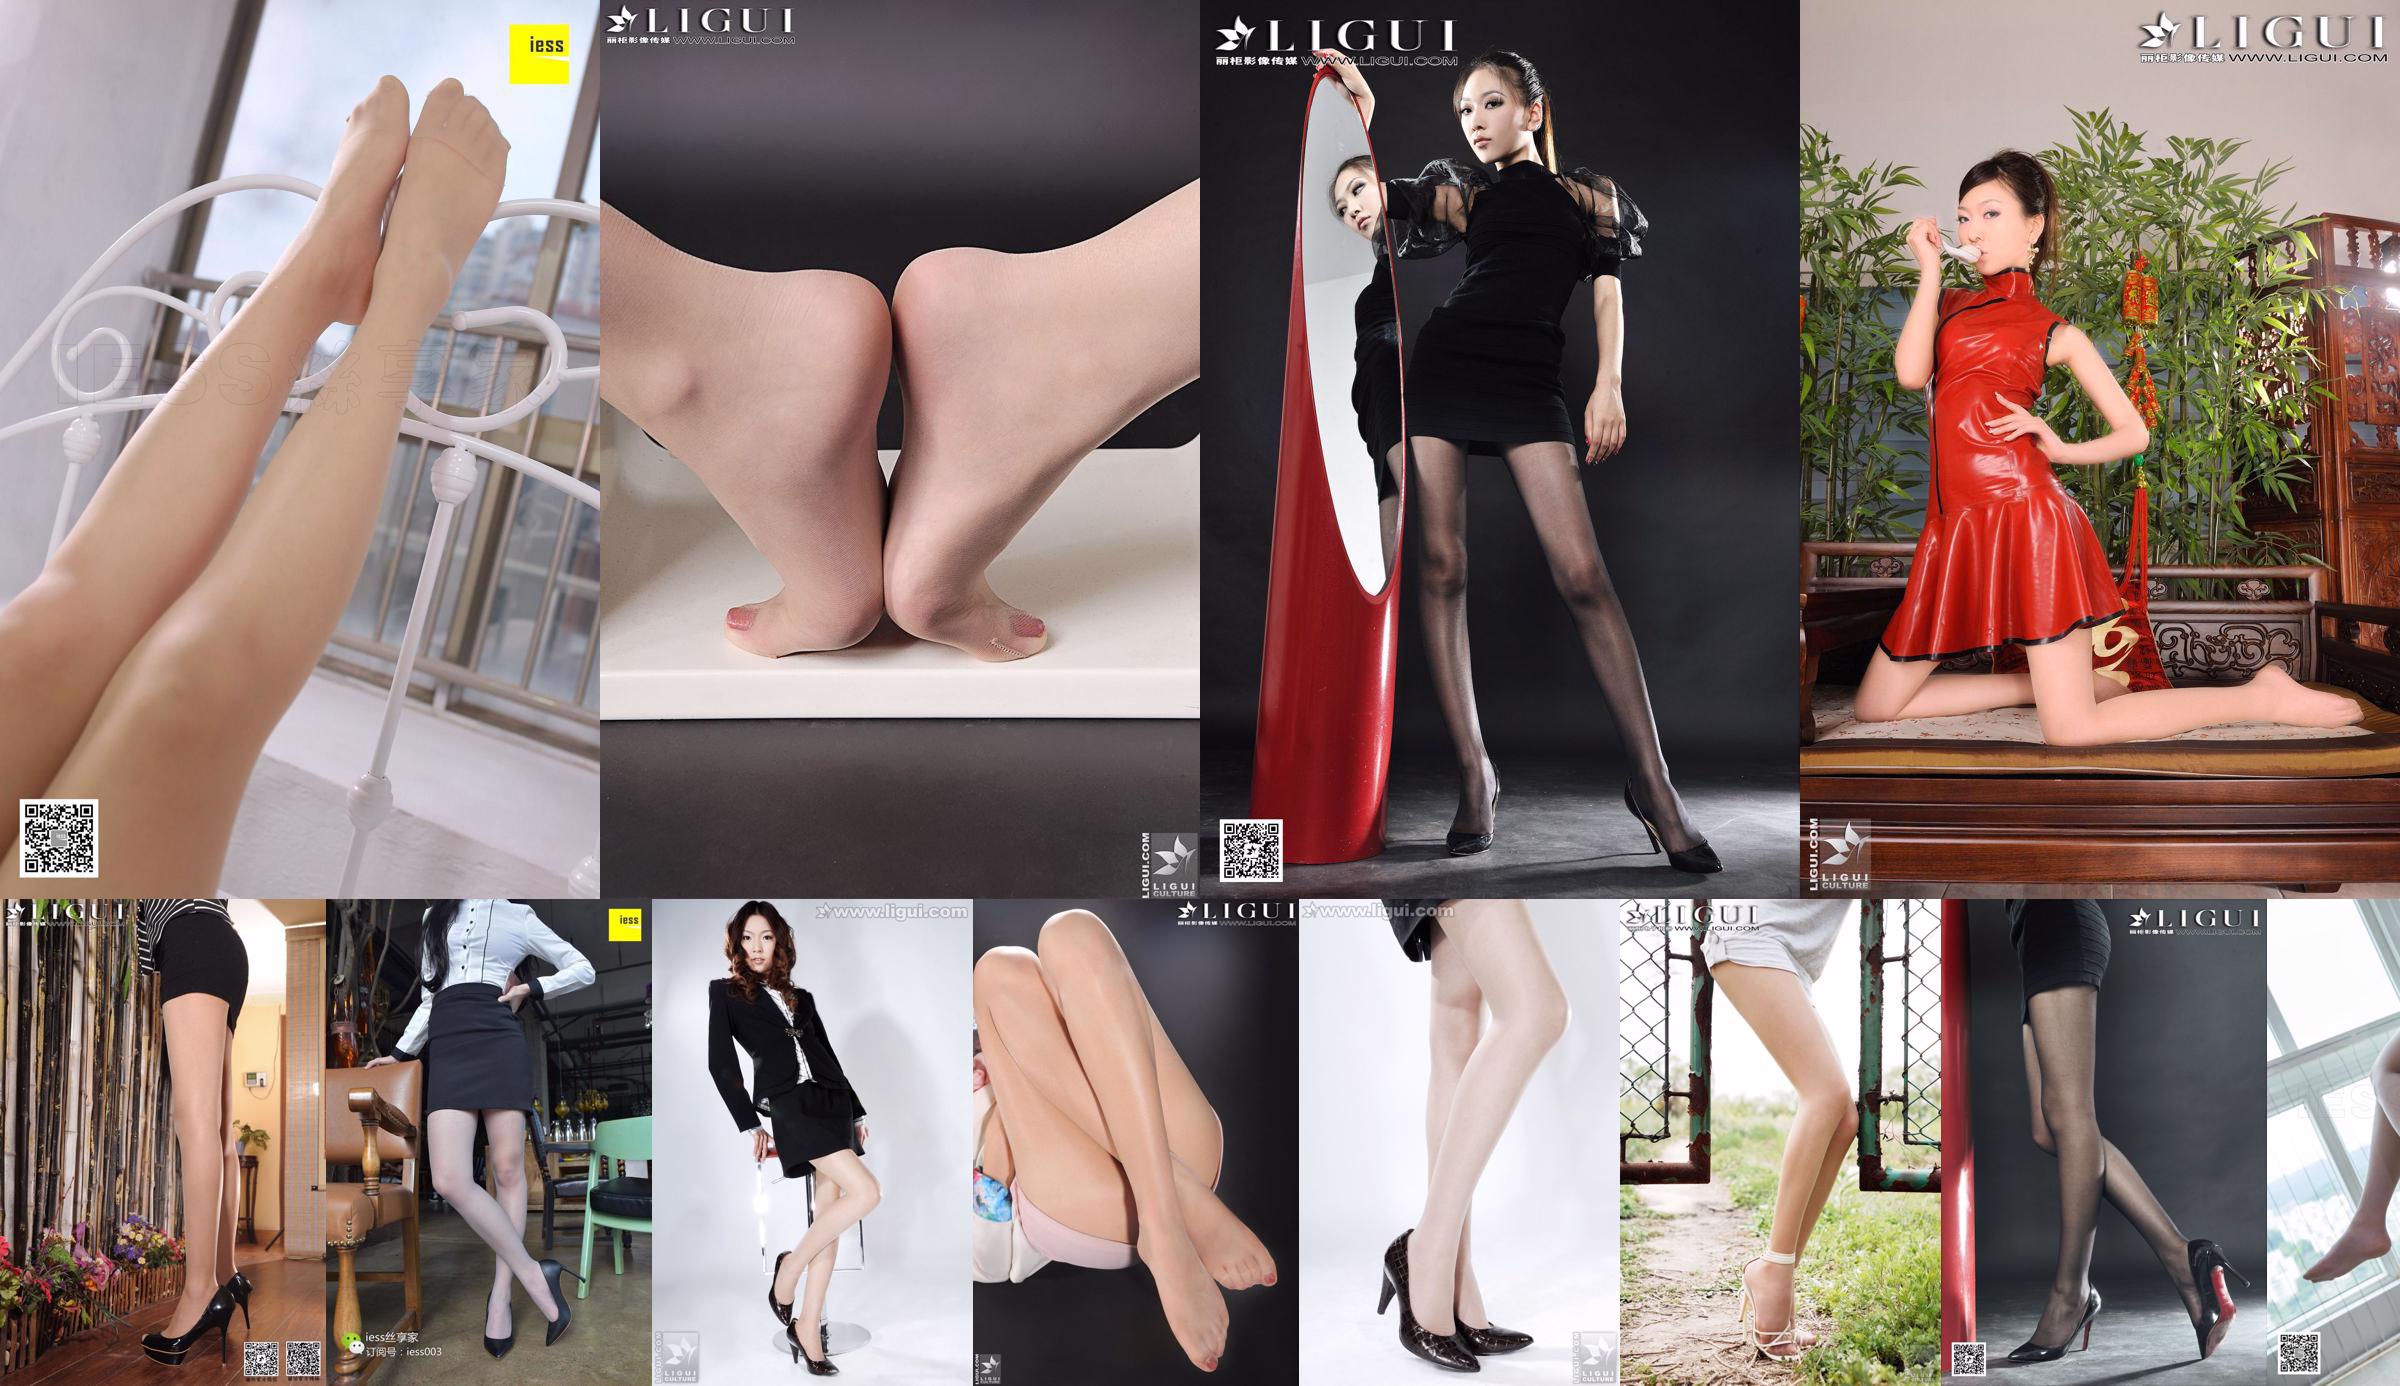 [丽 柜 Ligui] Model Wenxin "Putsy Hot Pants Girl" No.85e49e Halaman 4